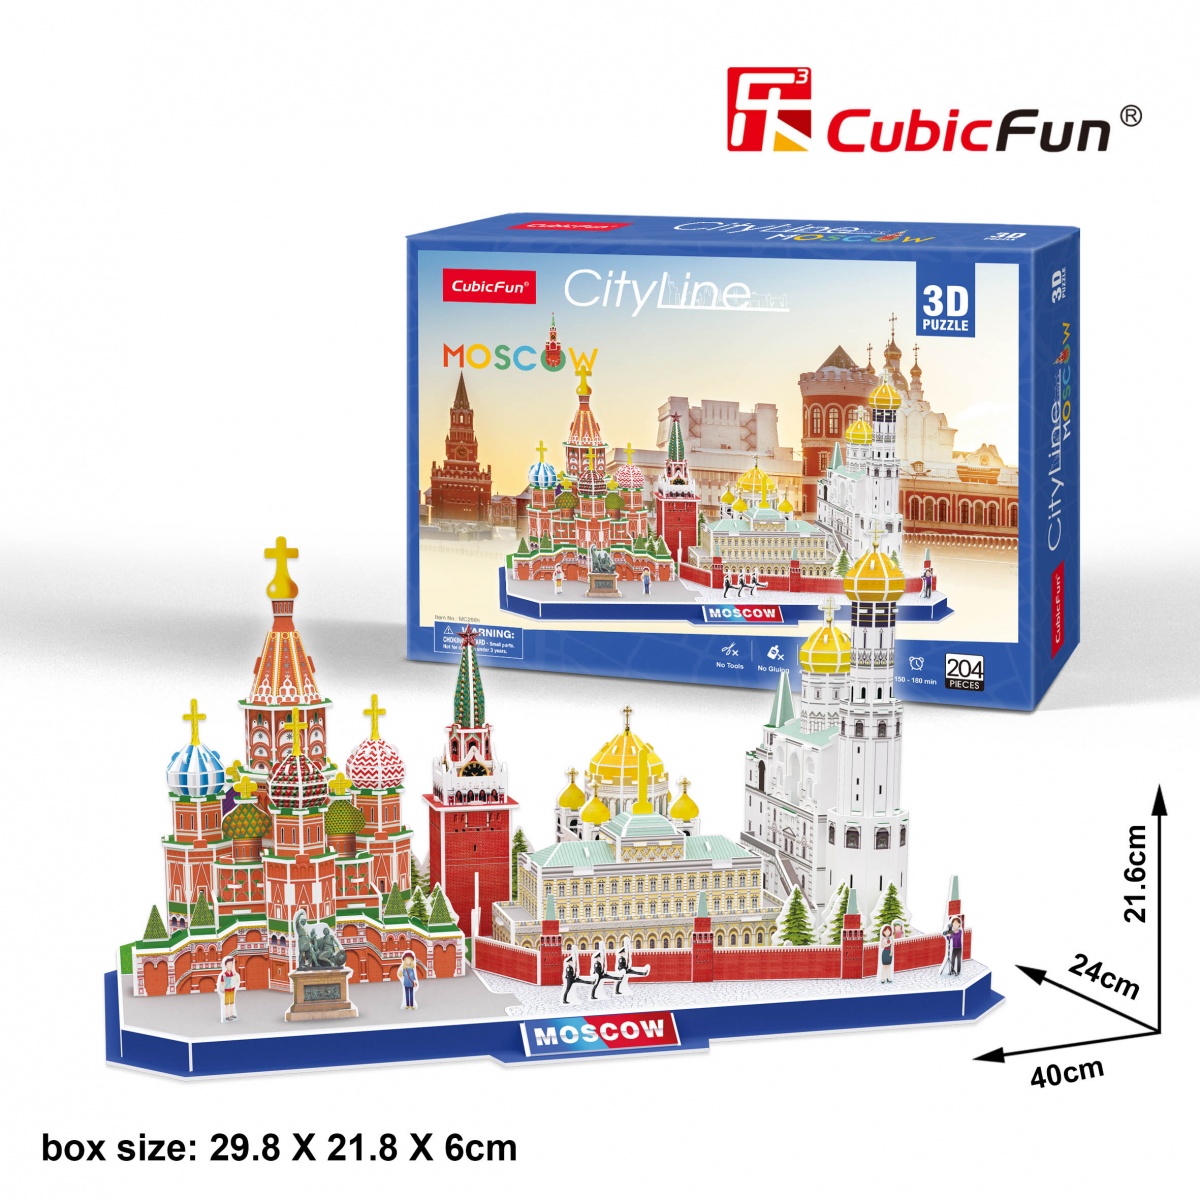 Cubic Fun 3D Puzzle Stadtansicht City Line Paris Frankreich 